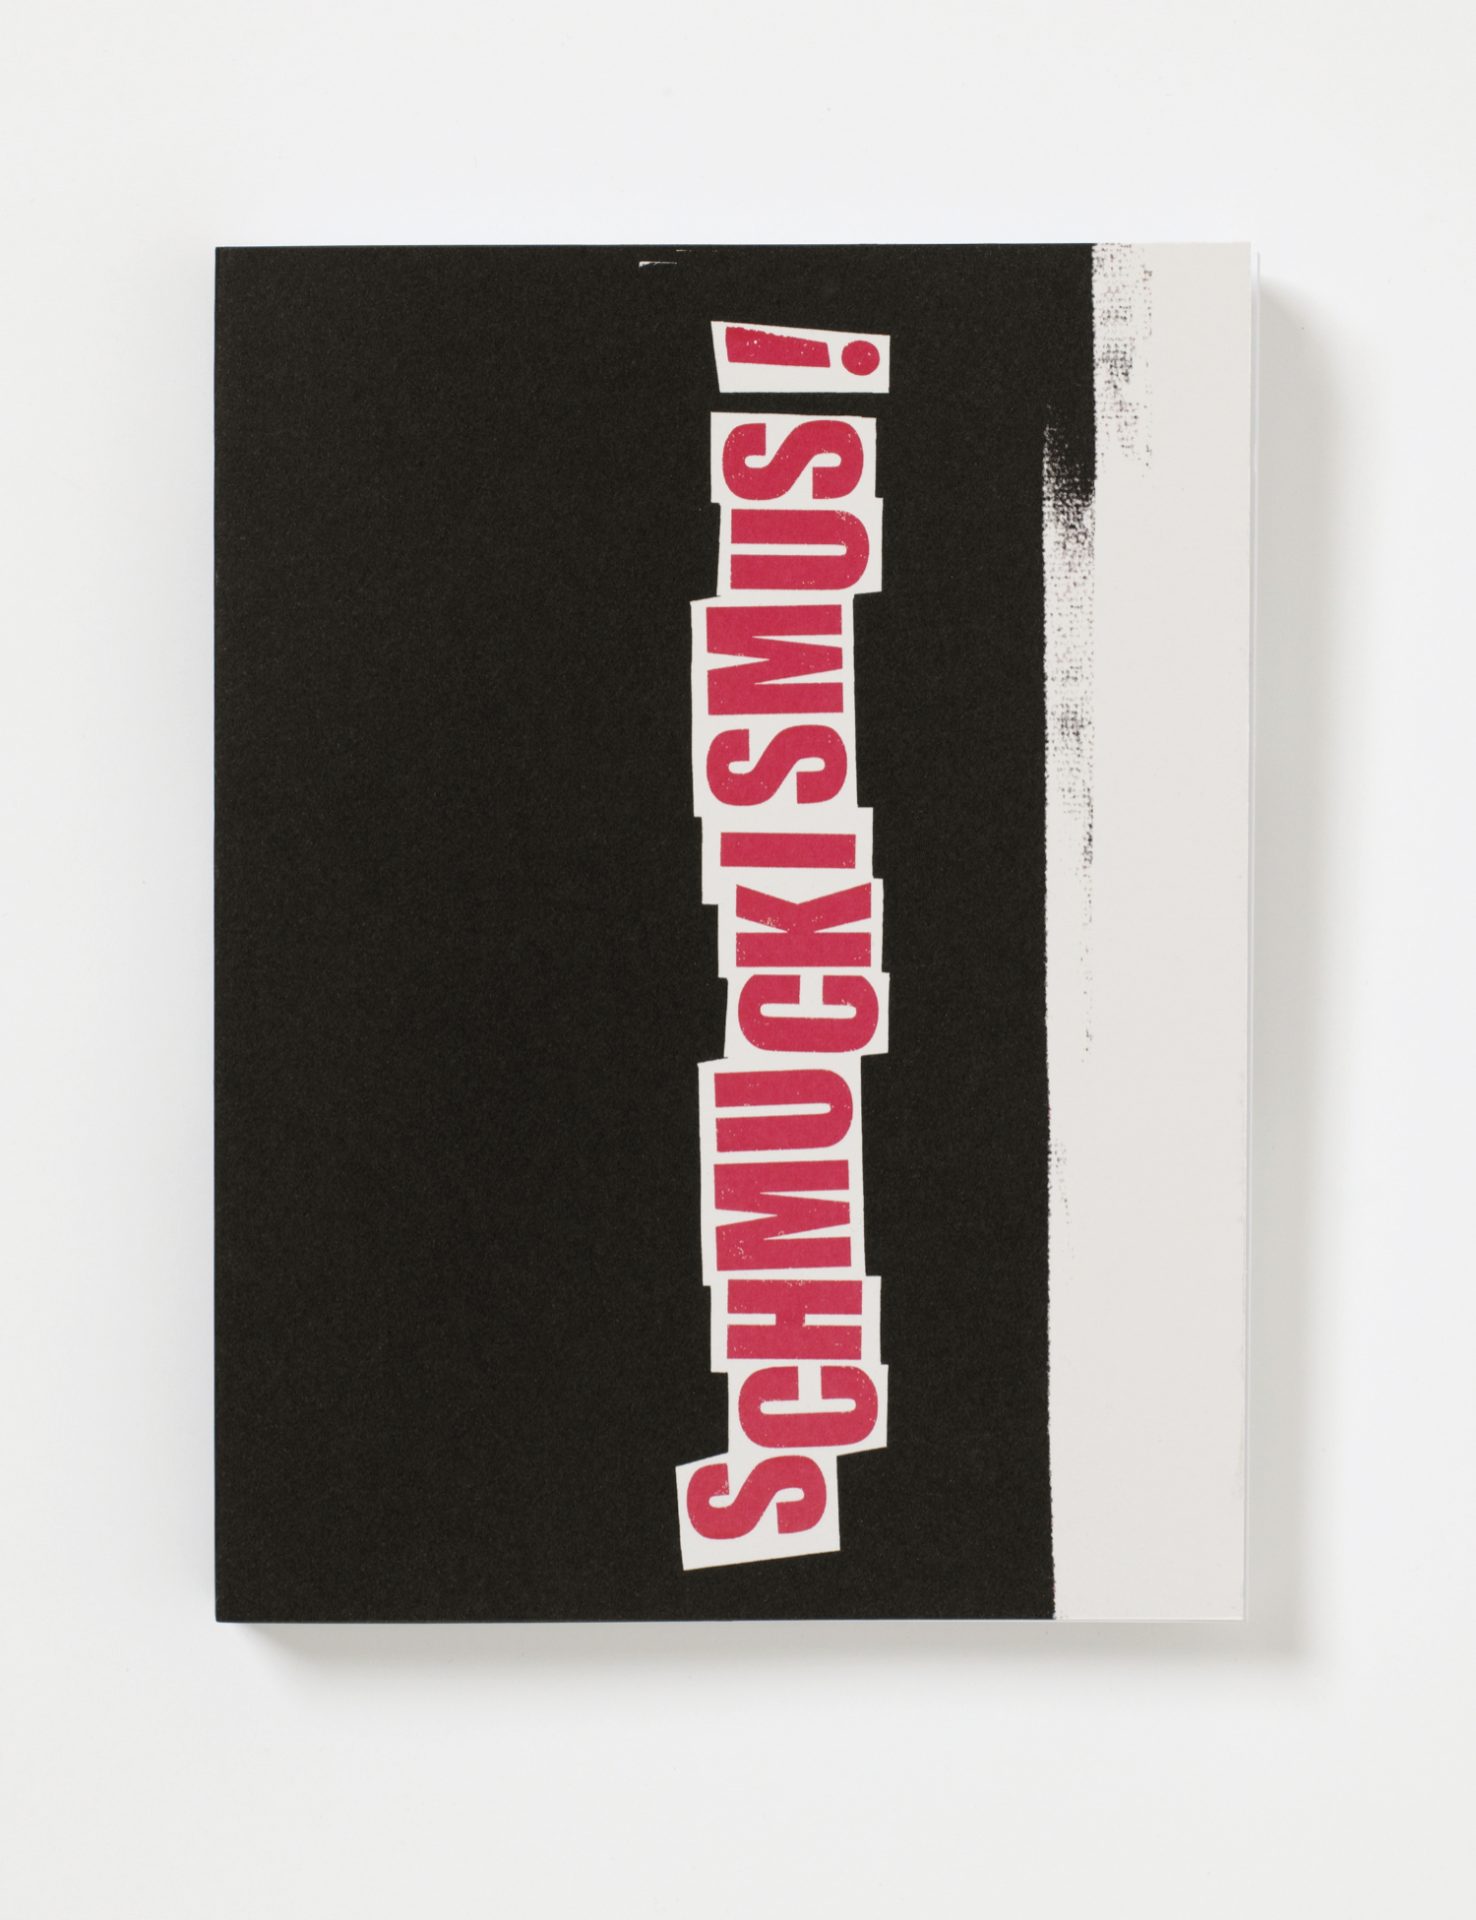 Cover Ausstellungskatalog. Auf schwarzem Hintergrund befindet sich das Wort Schmuckismus in Rot mit weißer Umrandung.